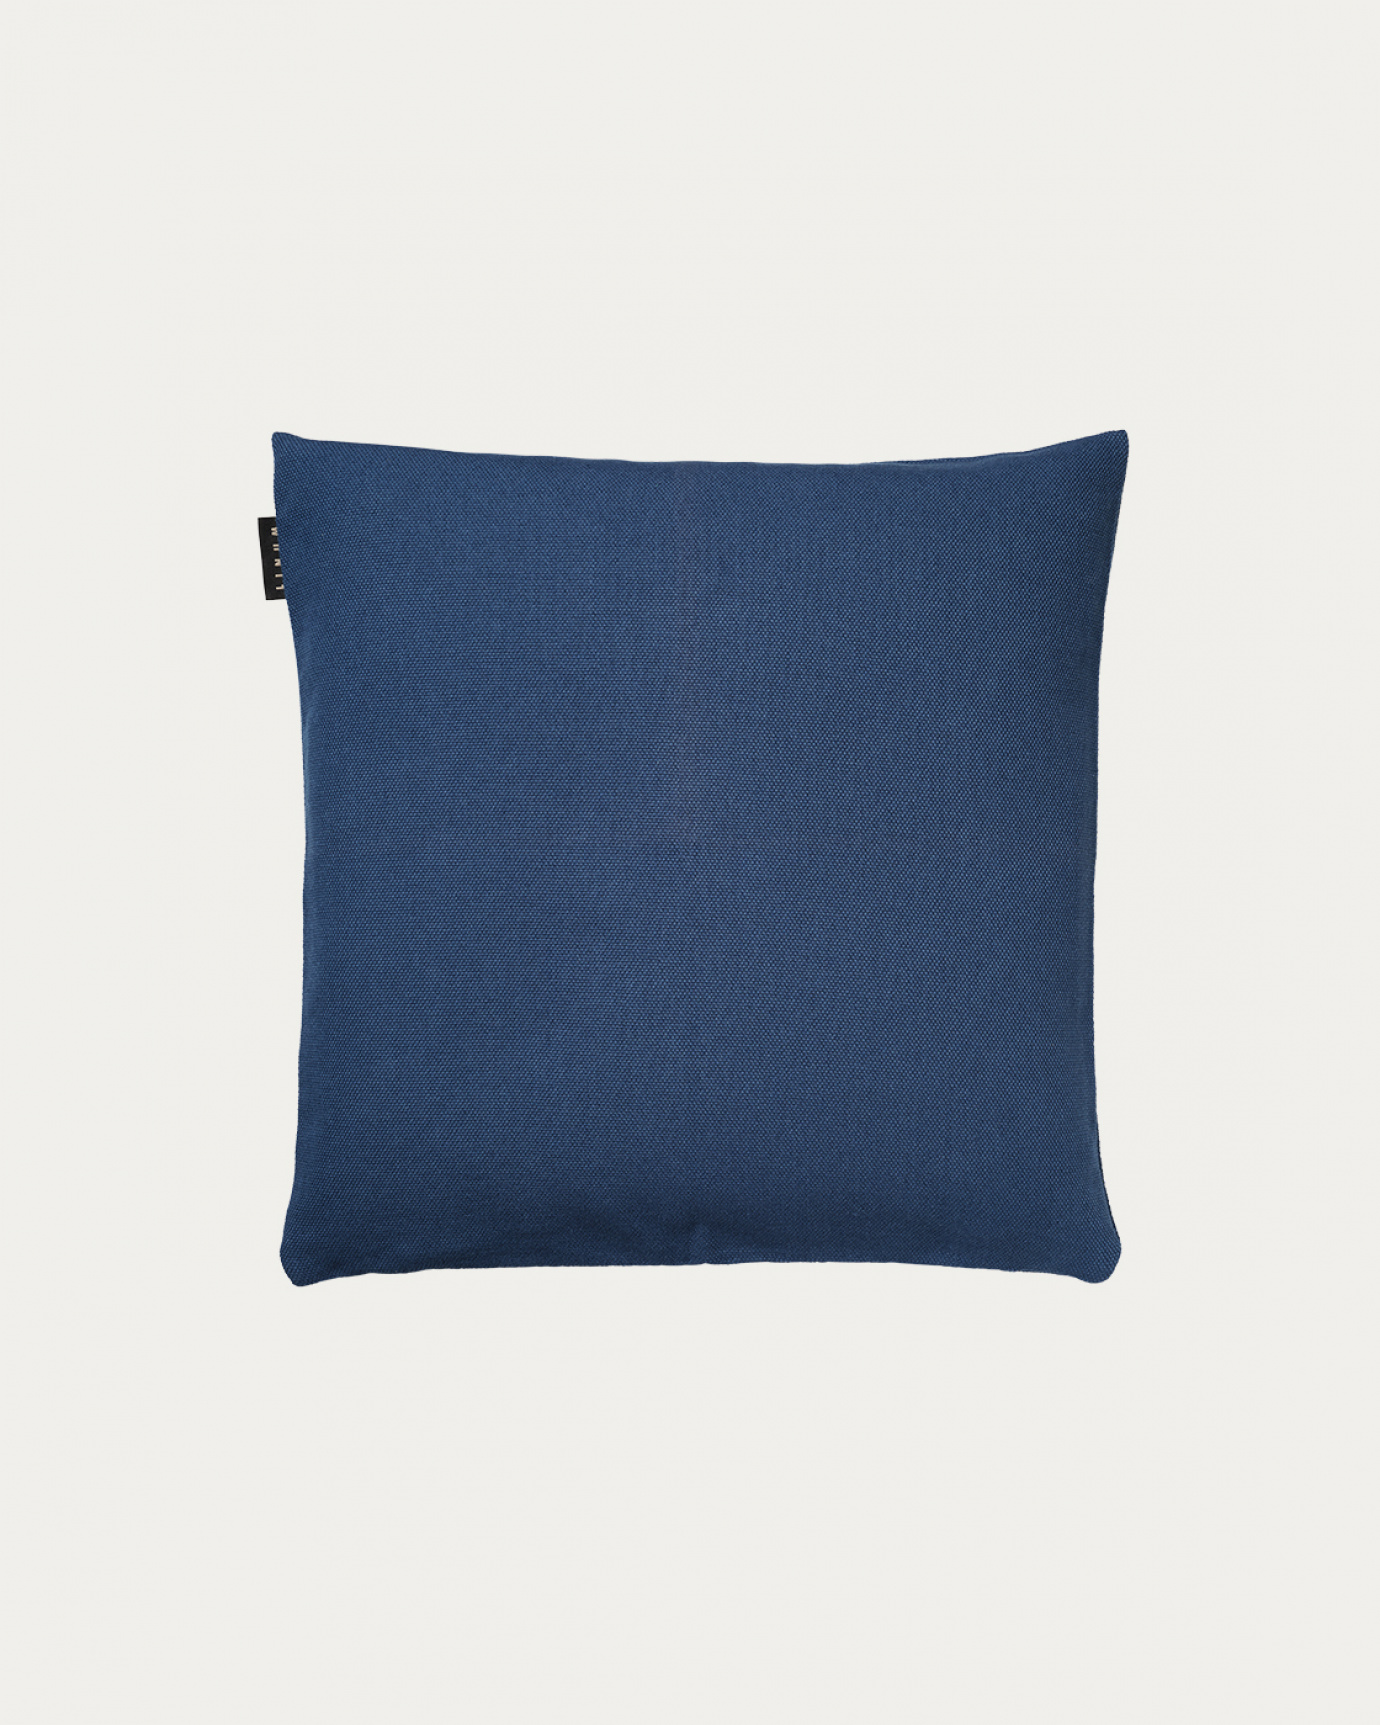 Image du produit housse de coussin PEPPER bleu nuit en coton doux de LINUM DESIGN. Facile à laver et durable pendant des générations. Taille 40 x 40 cm.